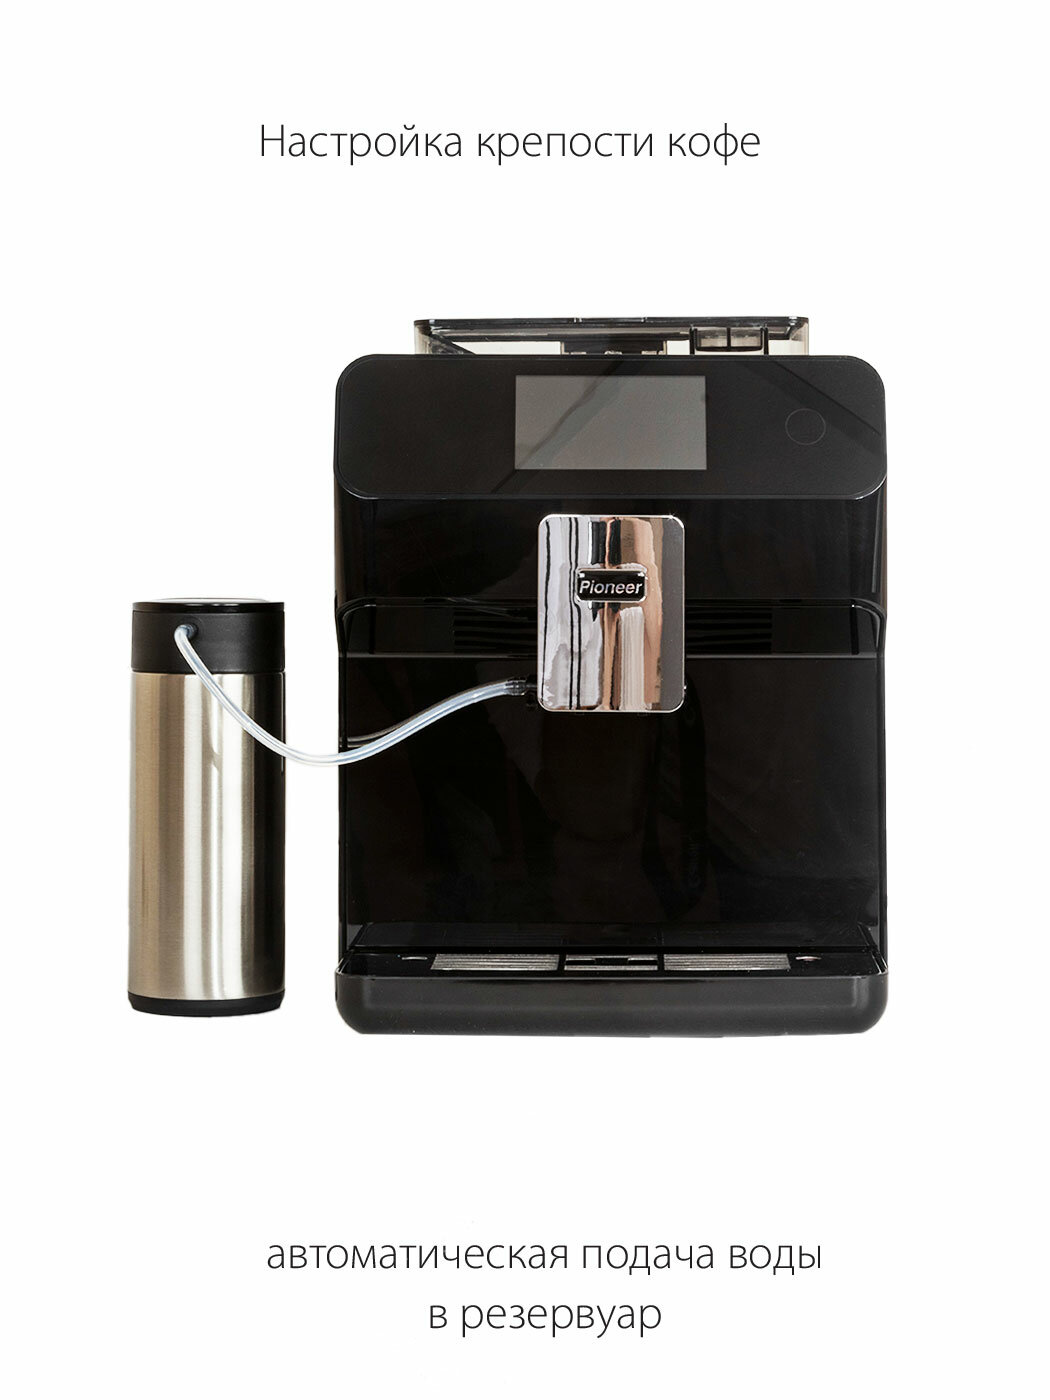 Кофемашина для дома Pioneer со встроенной кофемолкой, автокапучинатор, охладитель молока, 1500 Вт - фотография № 9